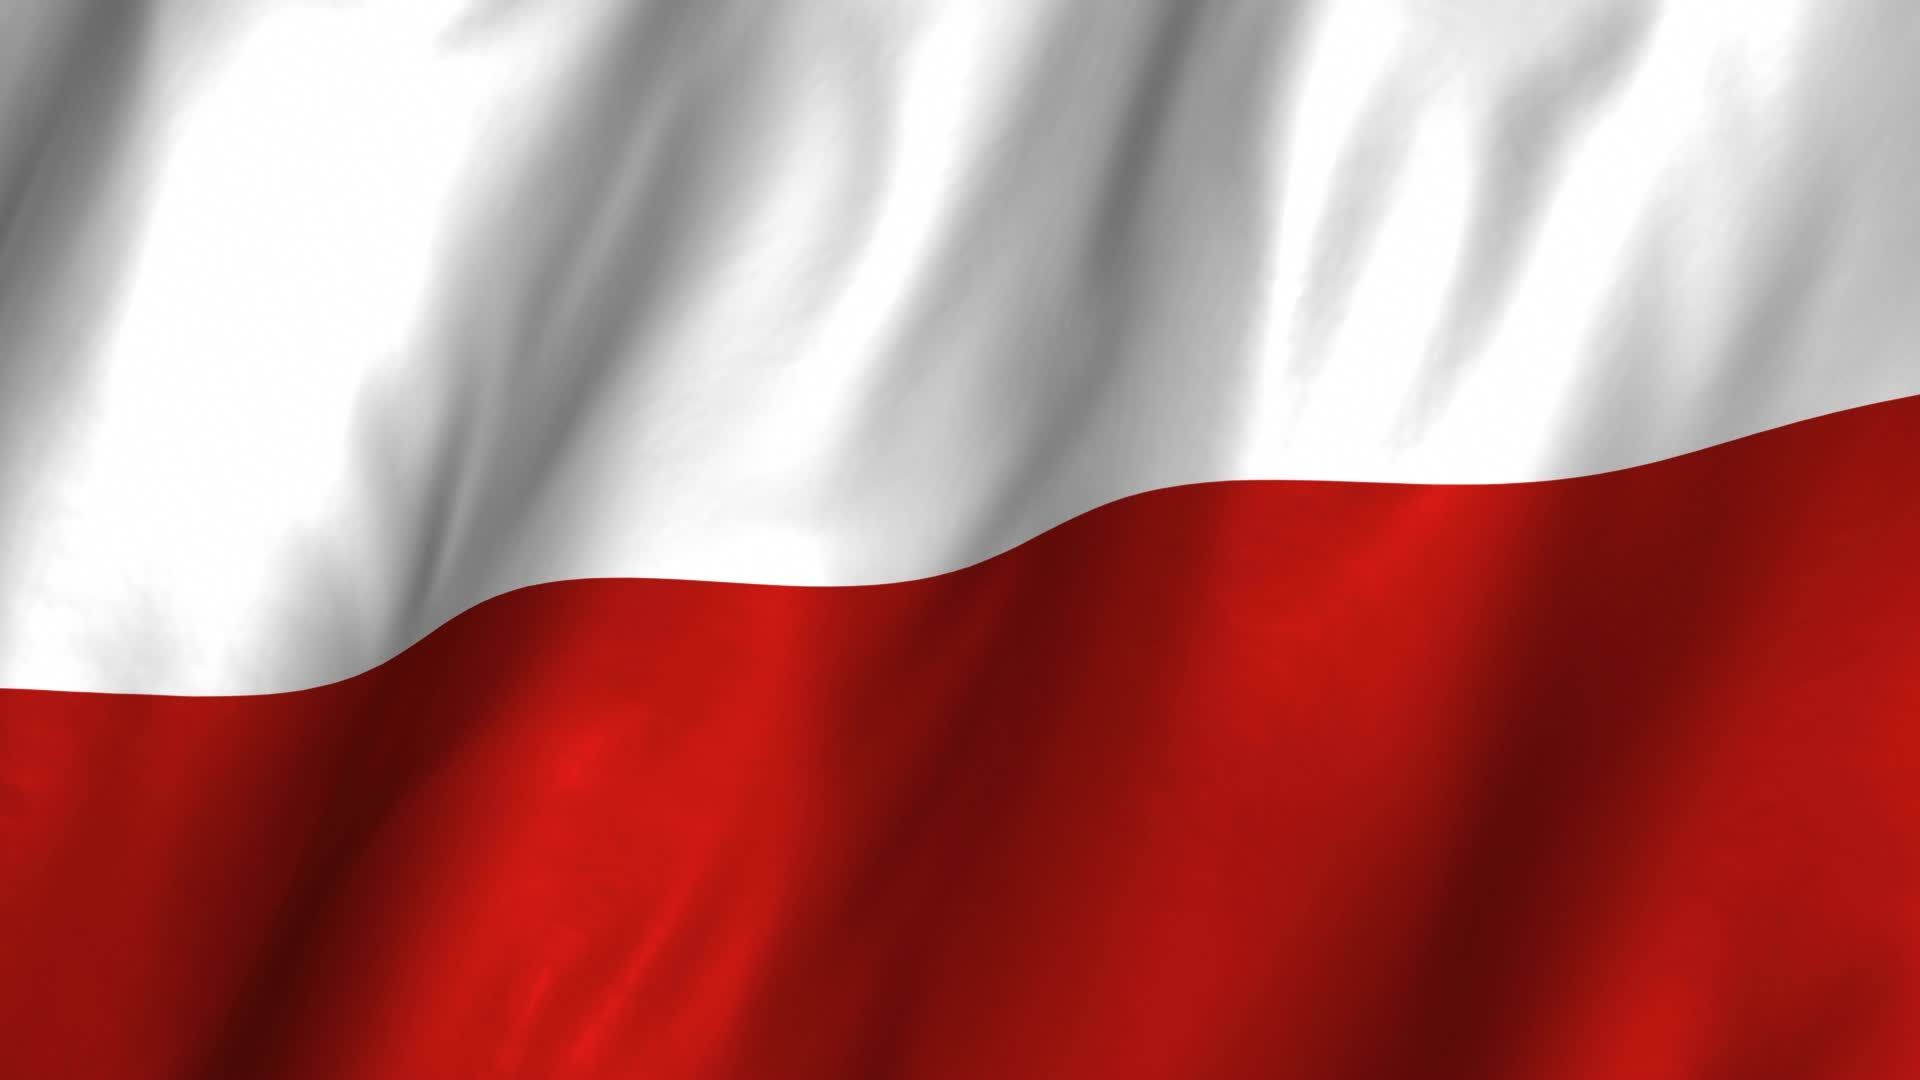 Background For Polish Flag Facebook Background Flag